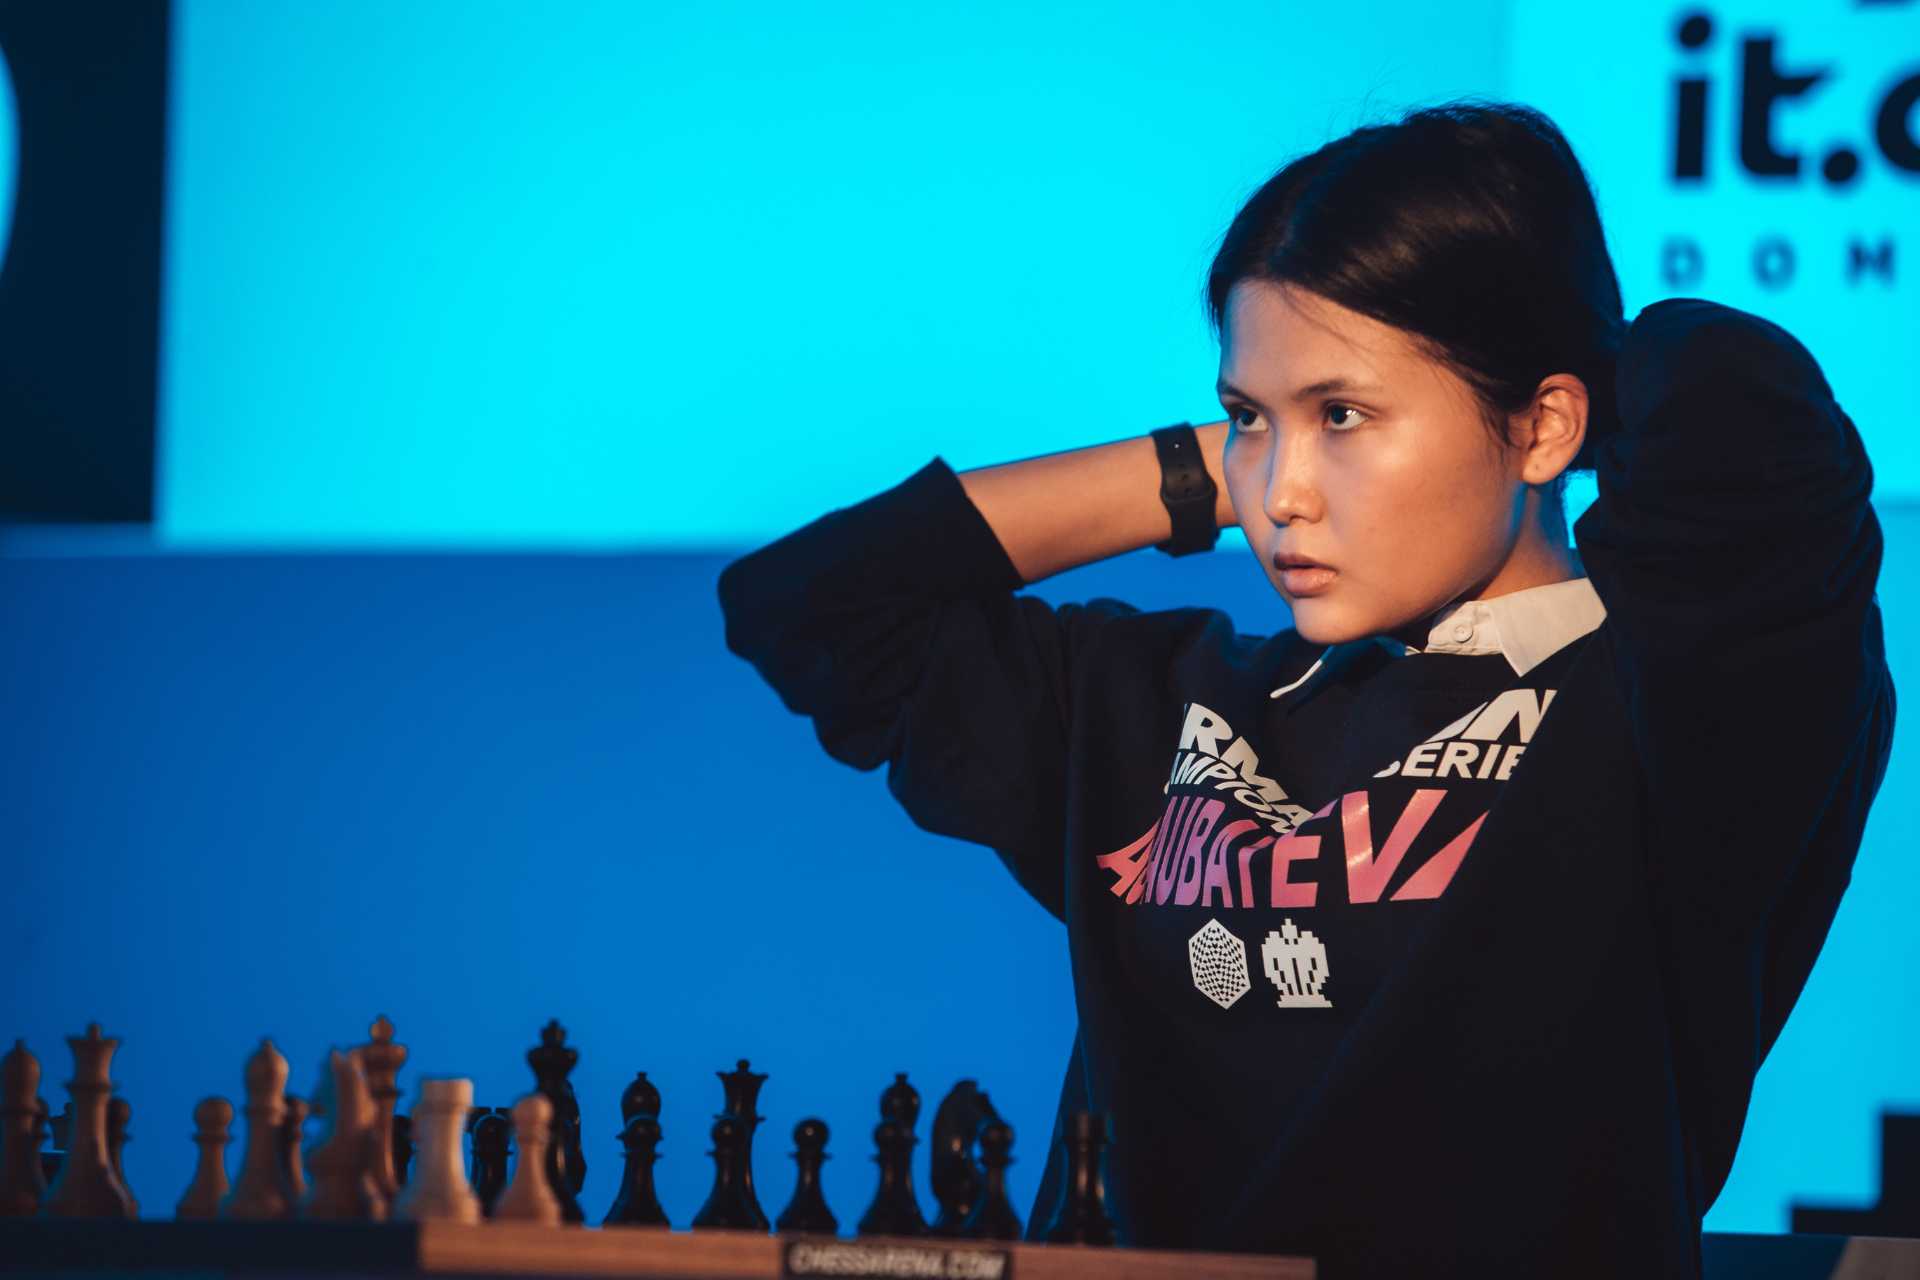 Bibisara Assaubayeva wins Asian Women's Online Championship